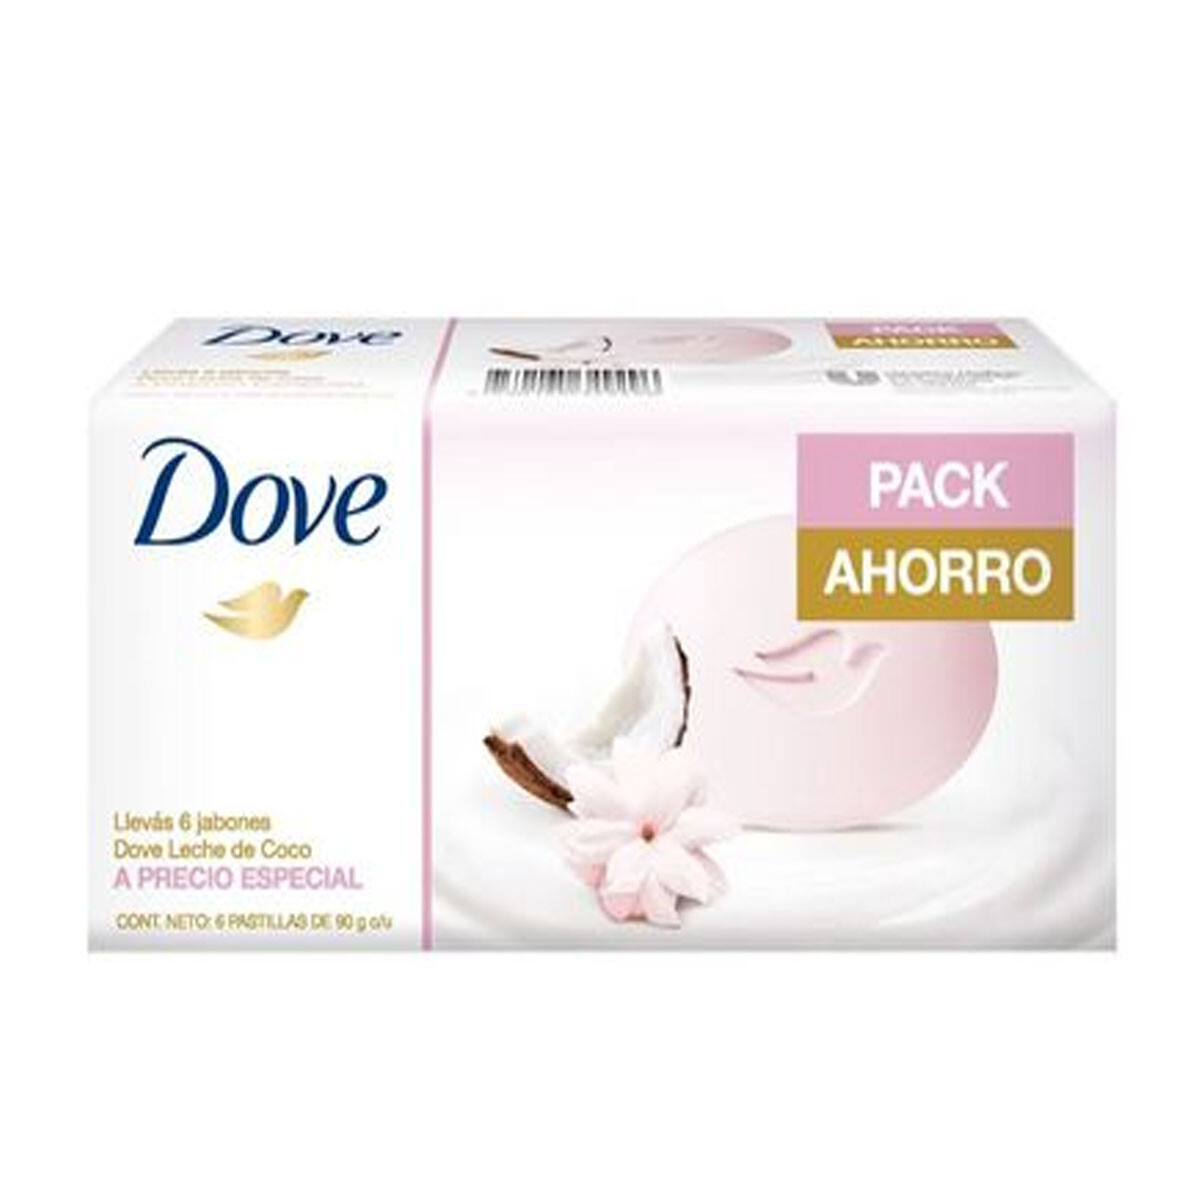 Jabones Dove Leche de Coco 90g Pack 6 